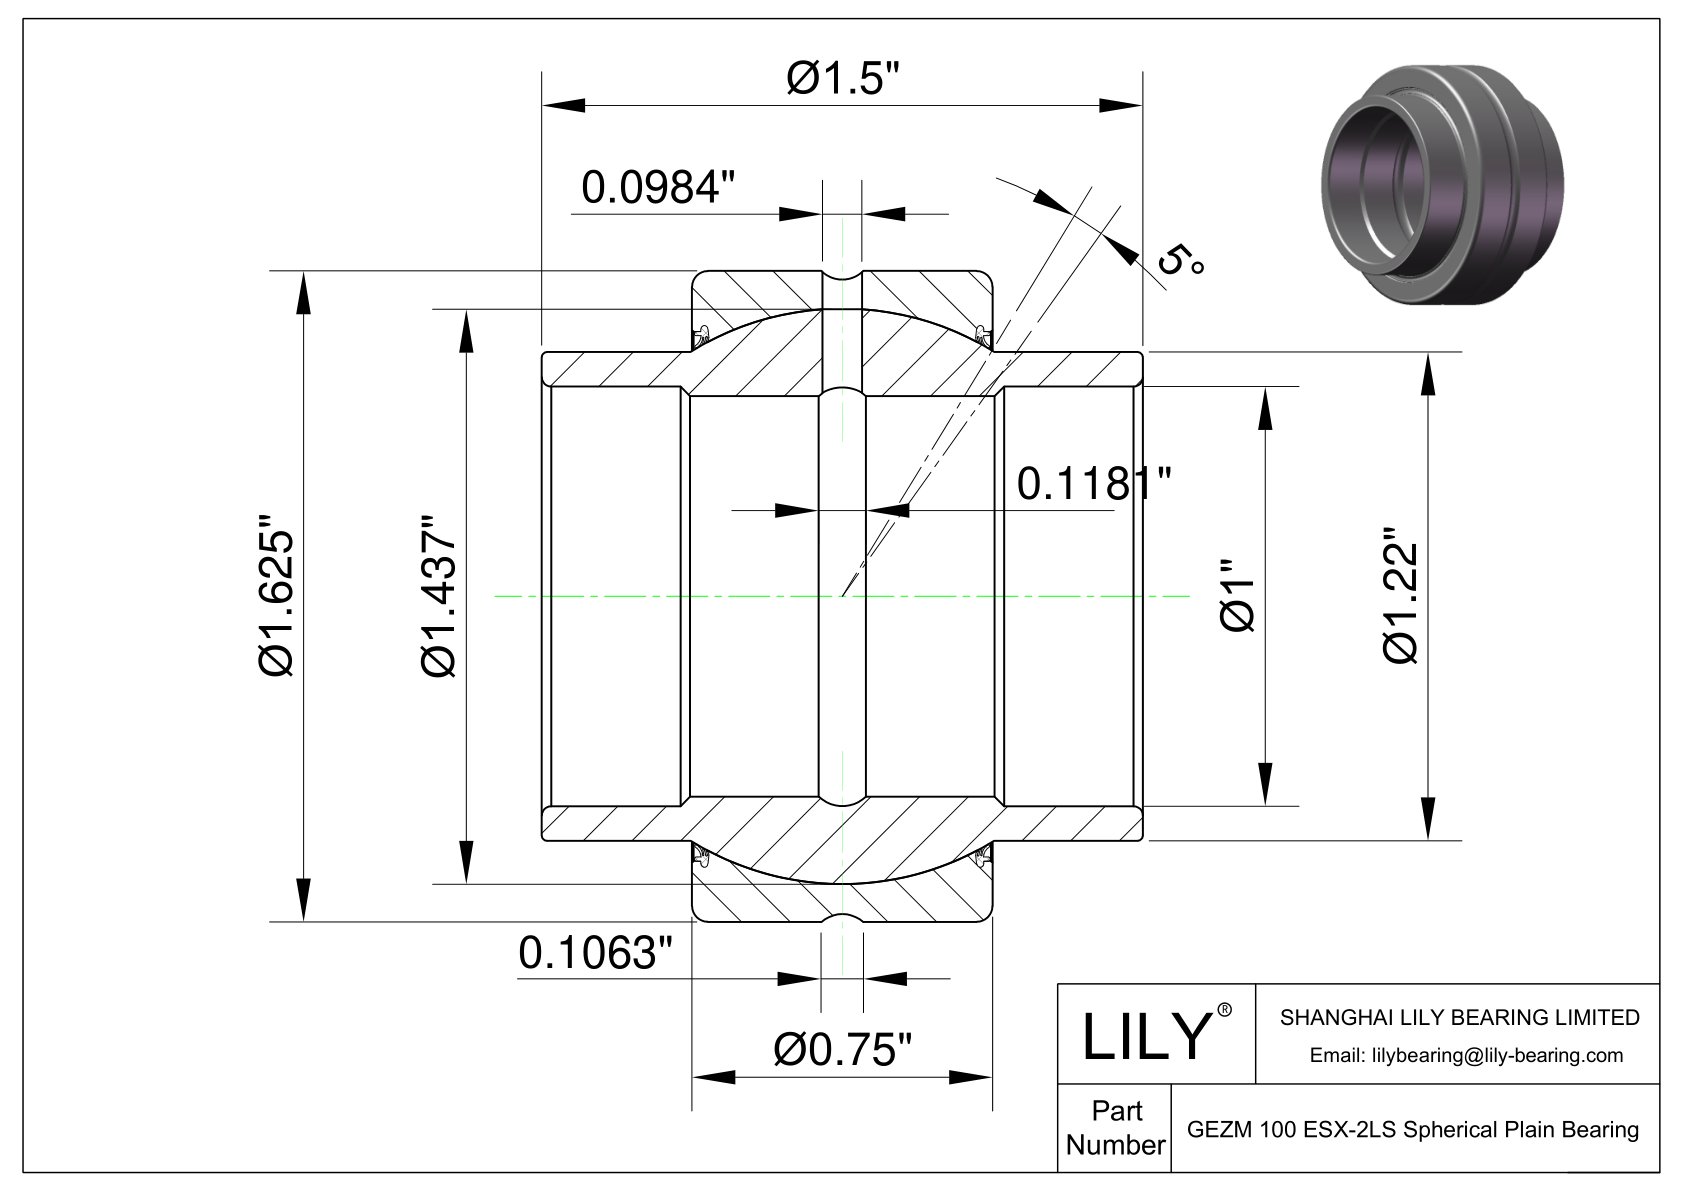 GEZM 100 ESX-2LS Radial Spherical Plain Bearings cad drawing